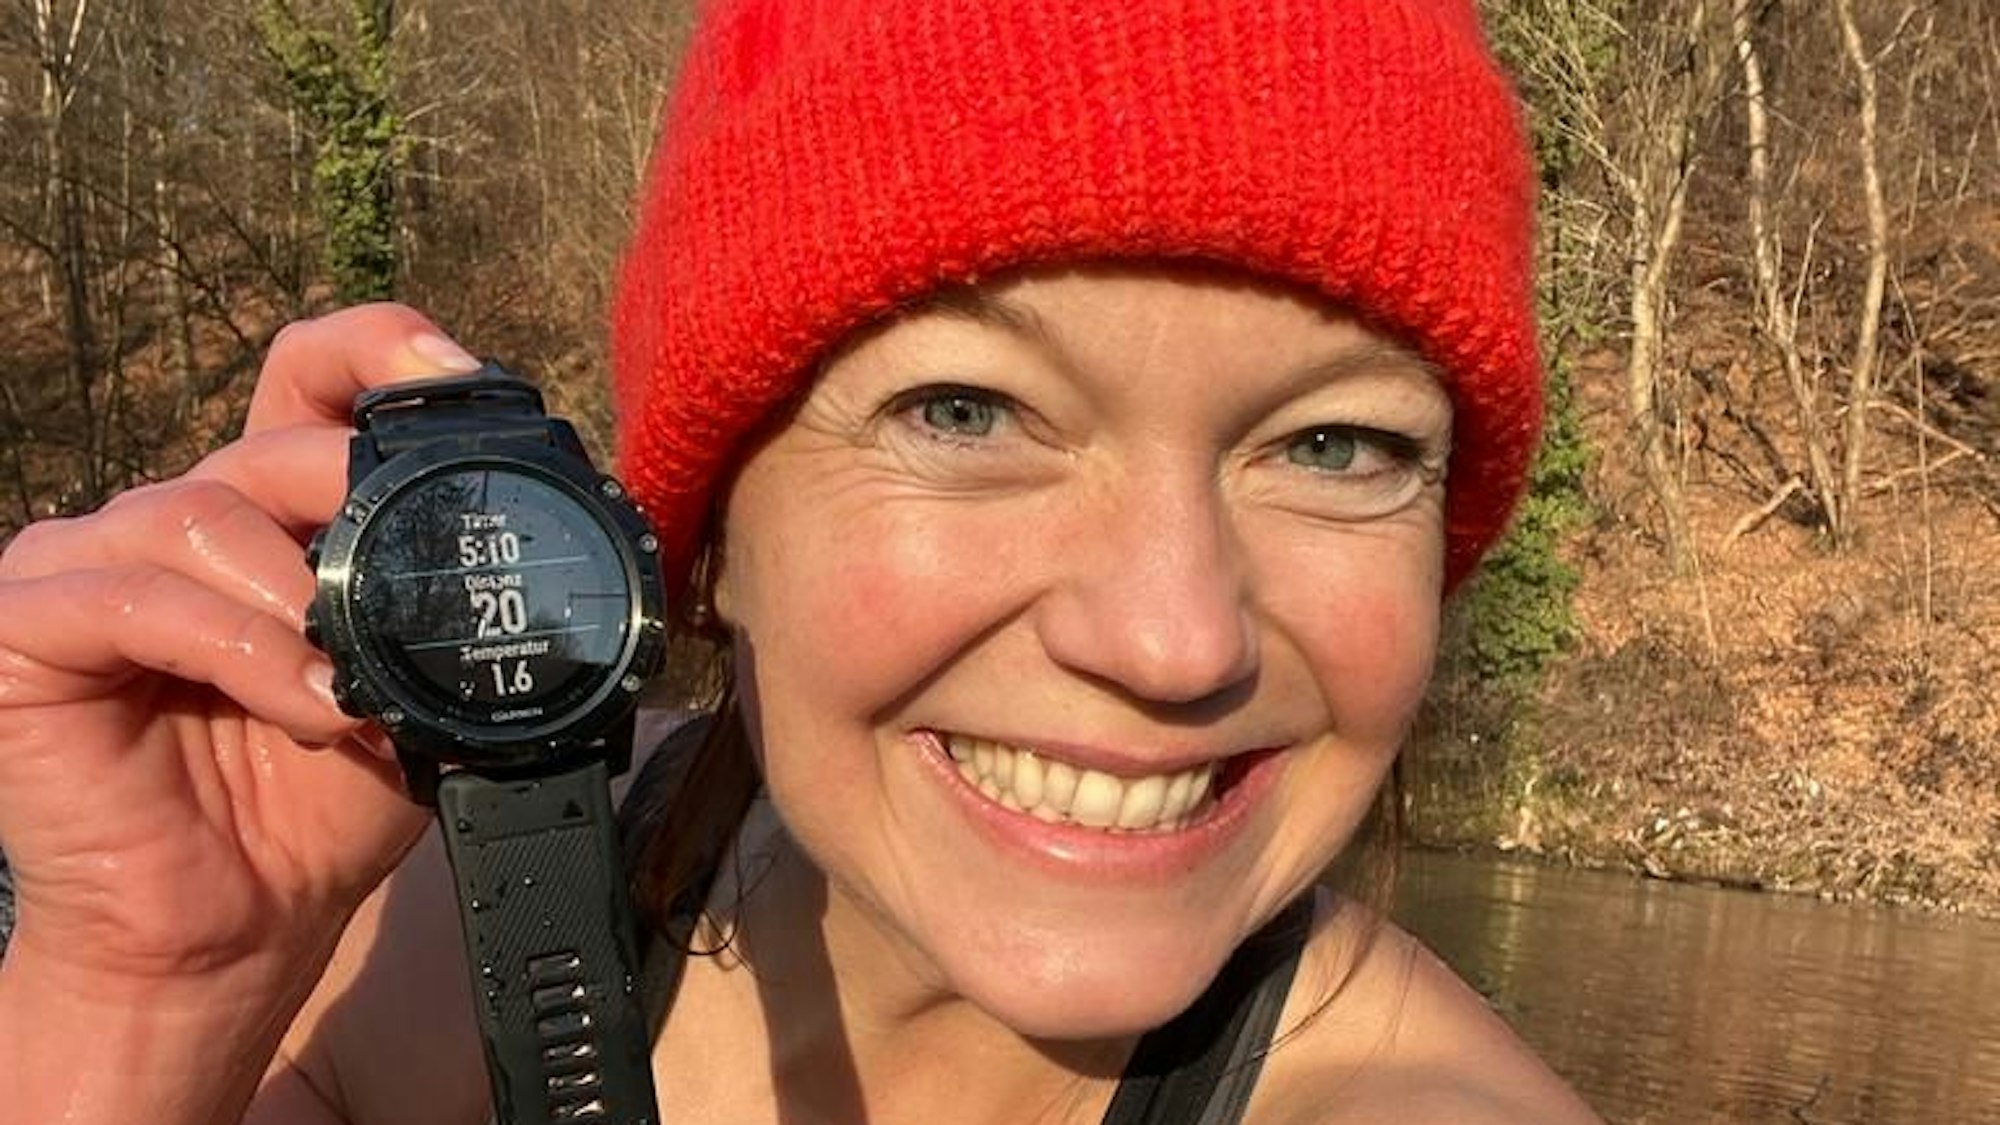 Anita Horn sitzt am Aggerufer in Schwimmkleidung und einer roten Wollmütze. Sie zeigt eine Armbanduhr mit Temperaturanzeige.